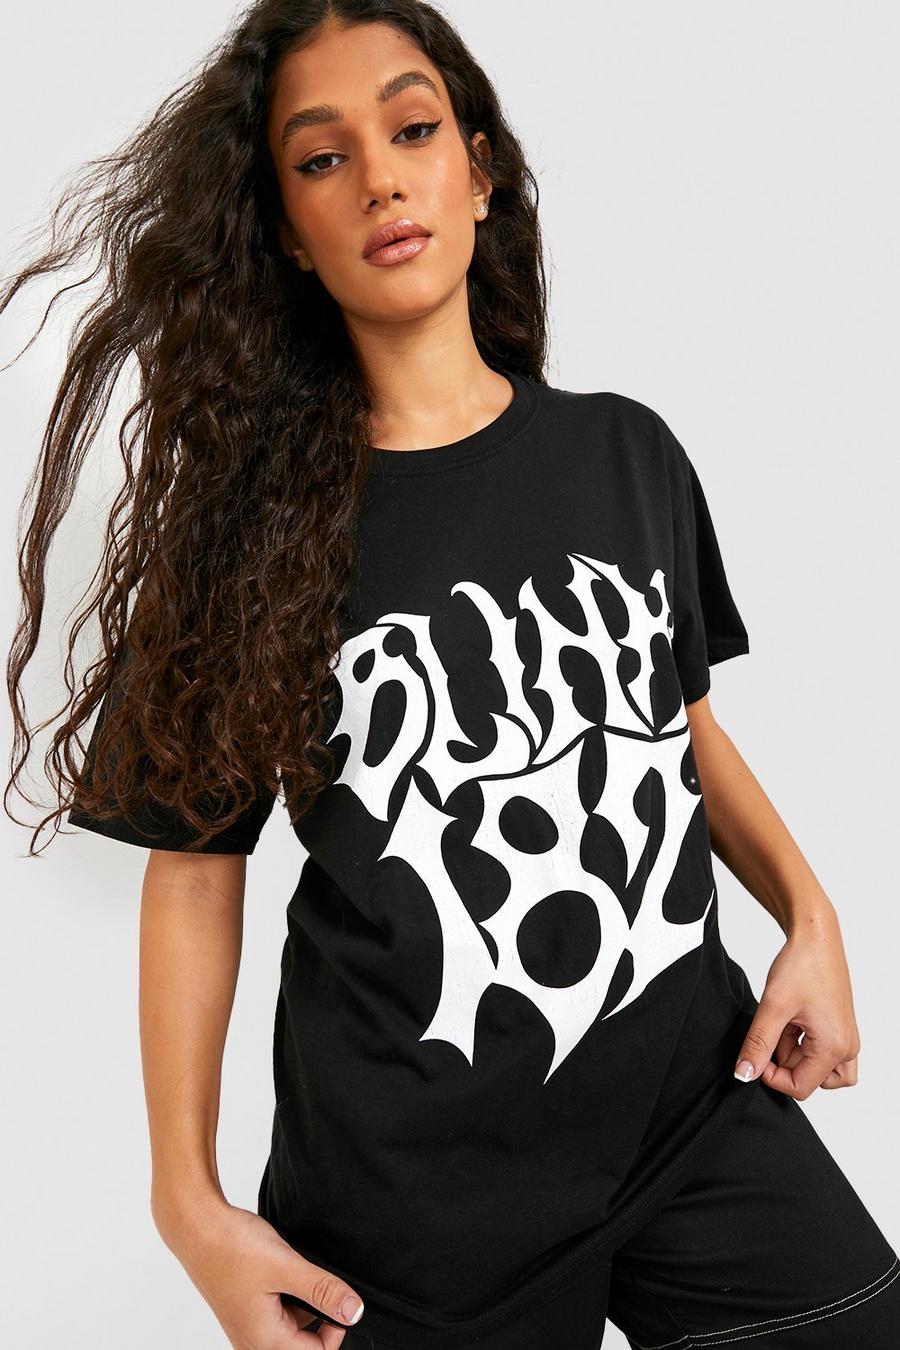 Black svart Oversized Blink 182 License T-shirt